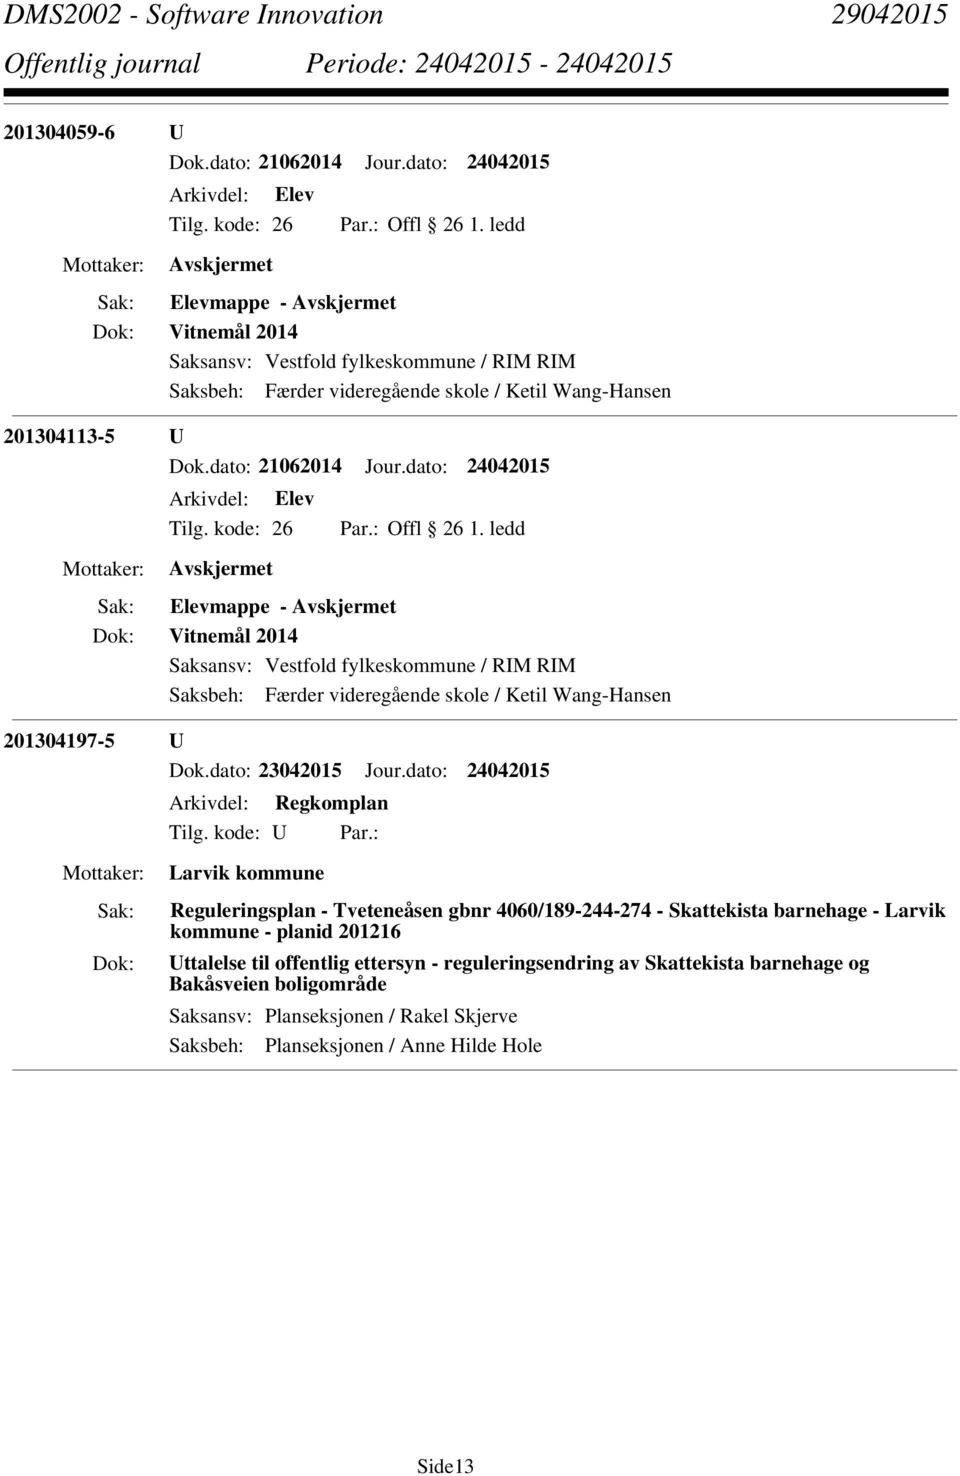 dato: 24042015 Arkivdel: Regkomplan Larvik kommune Reguleringsplan - Tveteneåsen gbnr 4060/189-244-274 - Skattekista barnehage - Larvik kommune - planid 201216